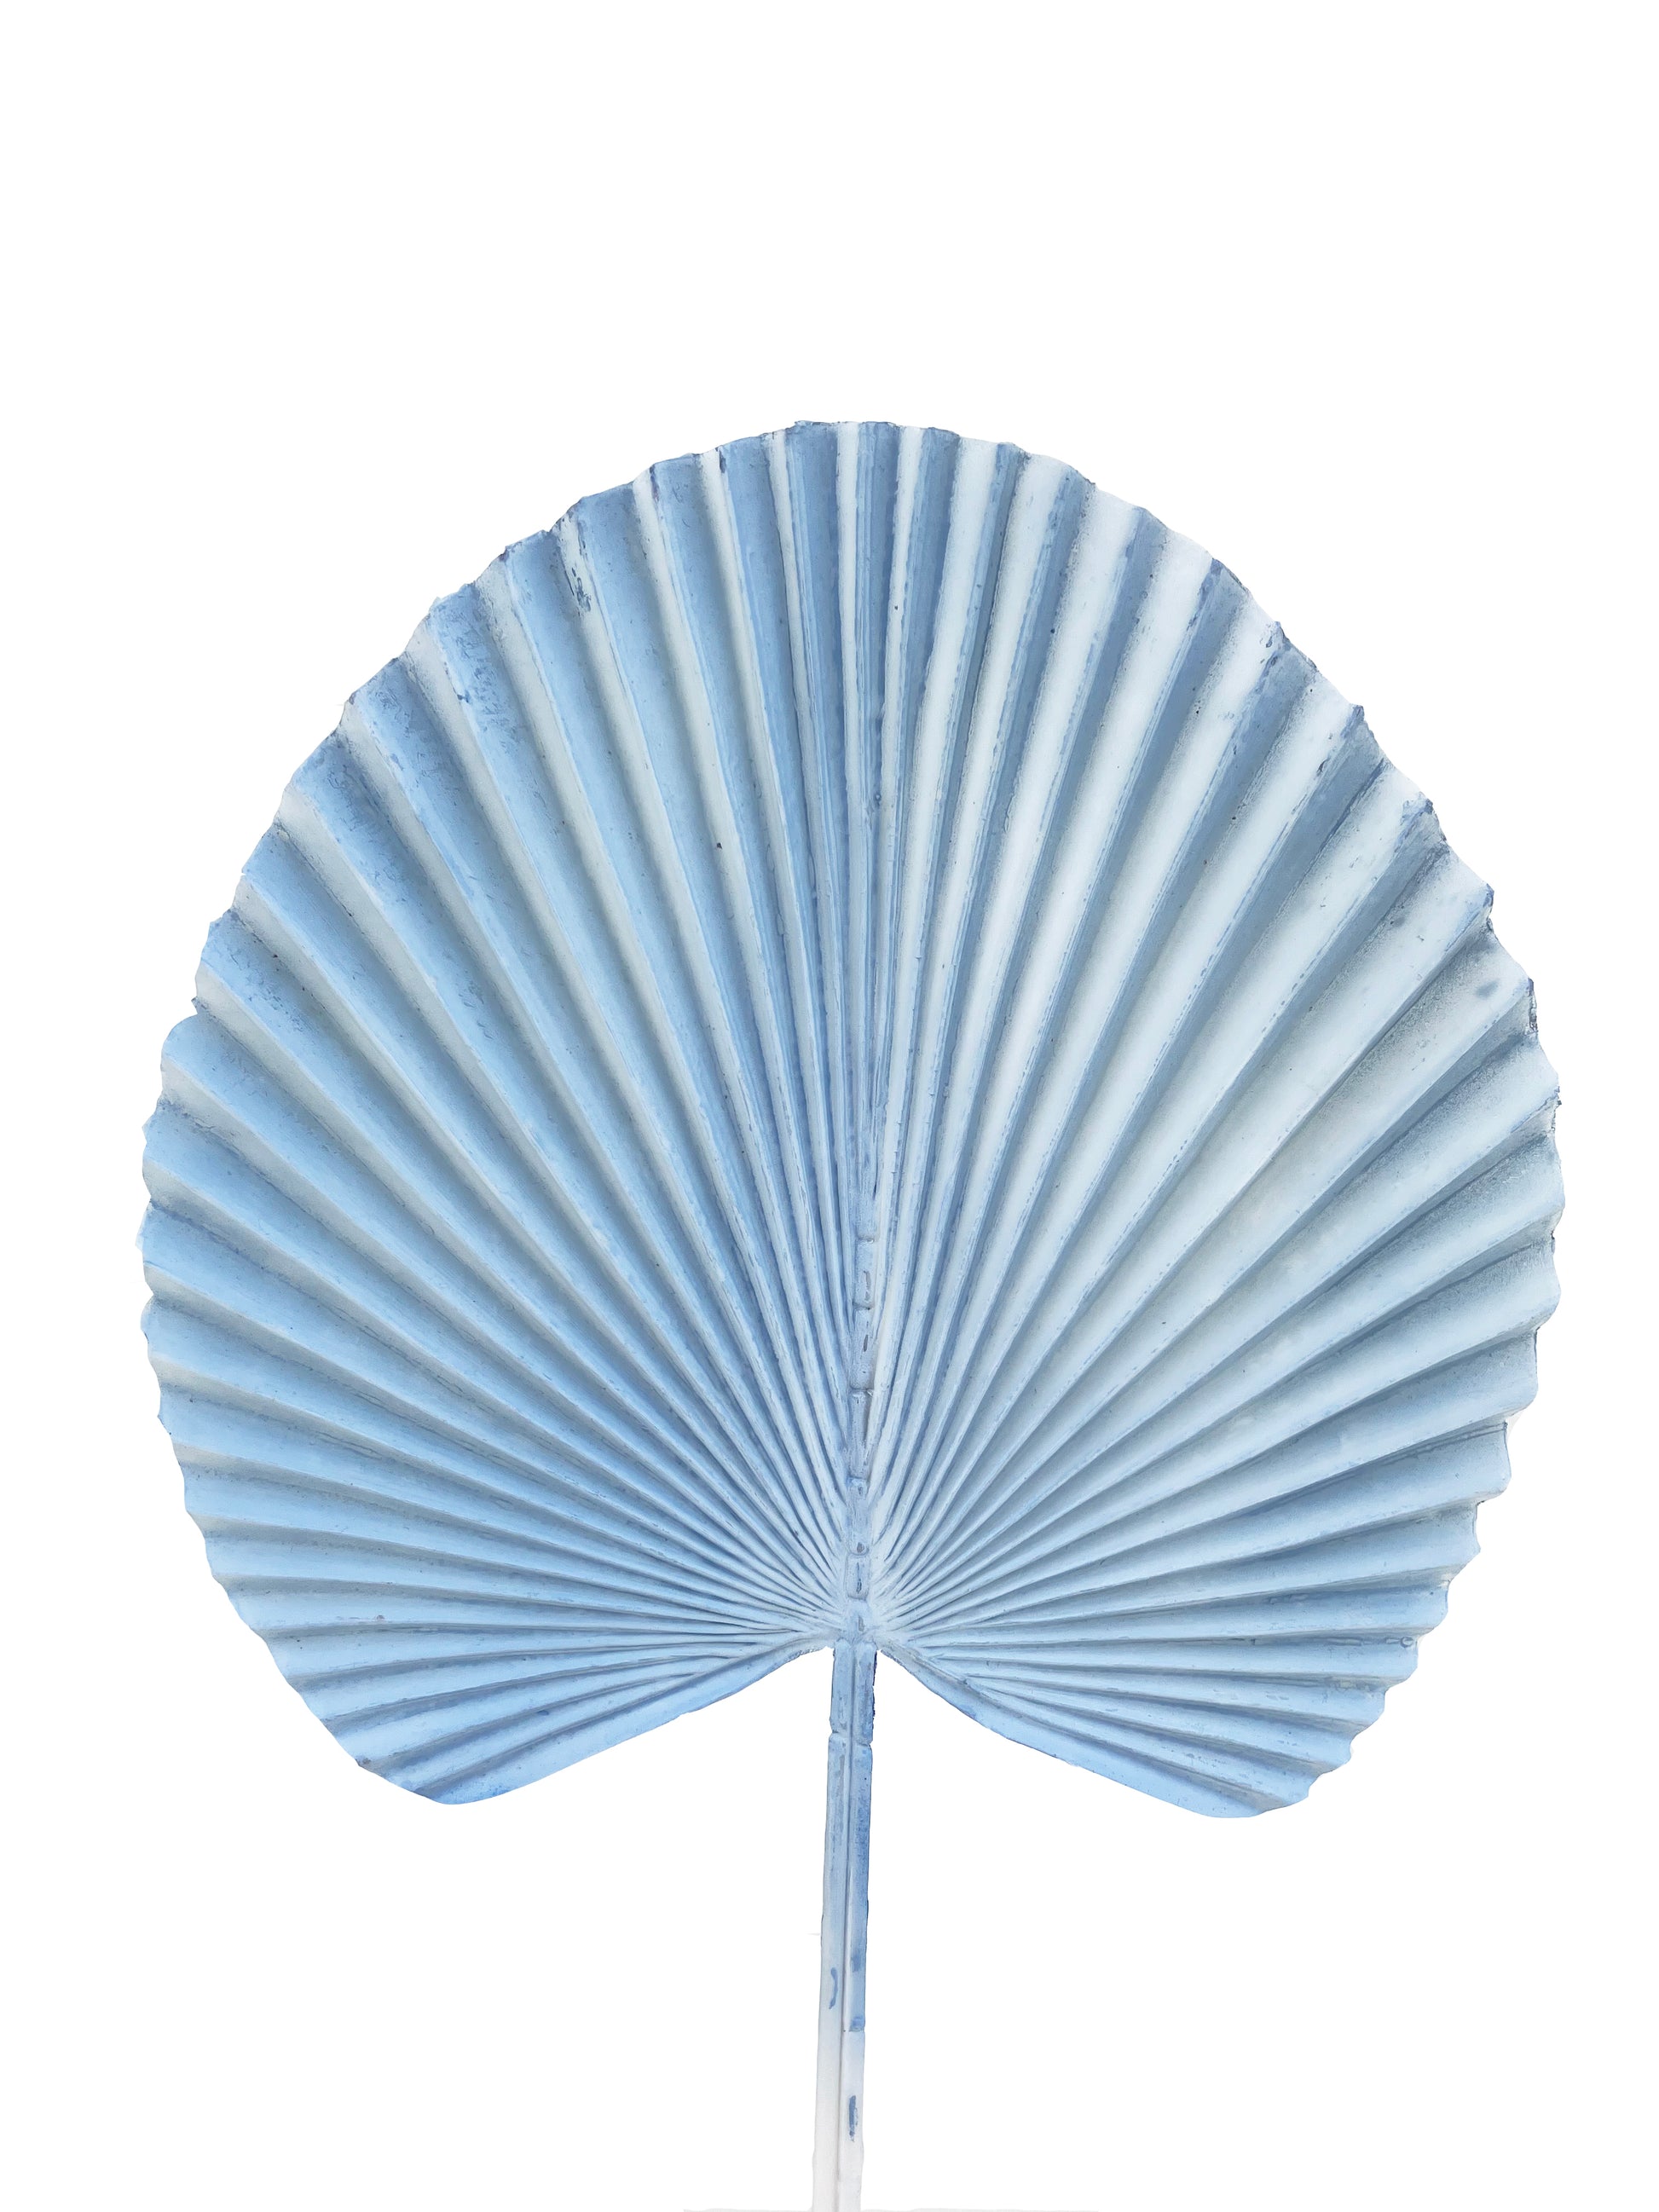 artificial fan palm pale blue